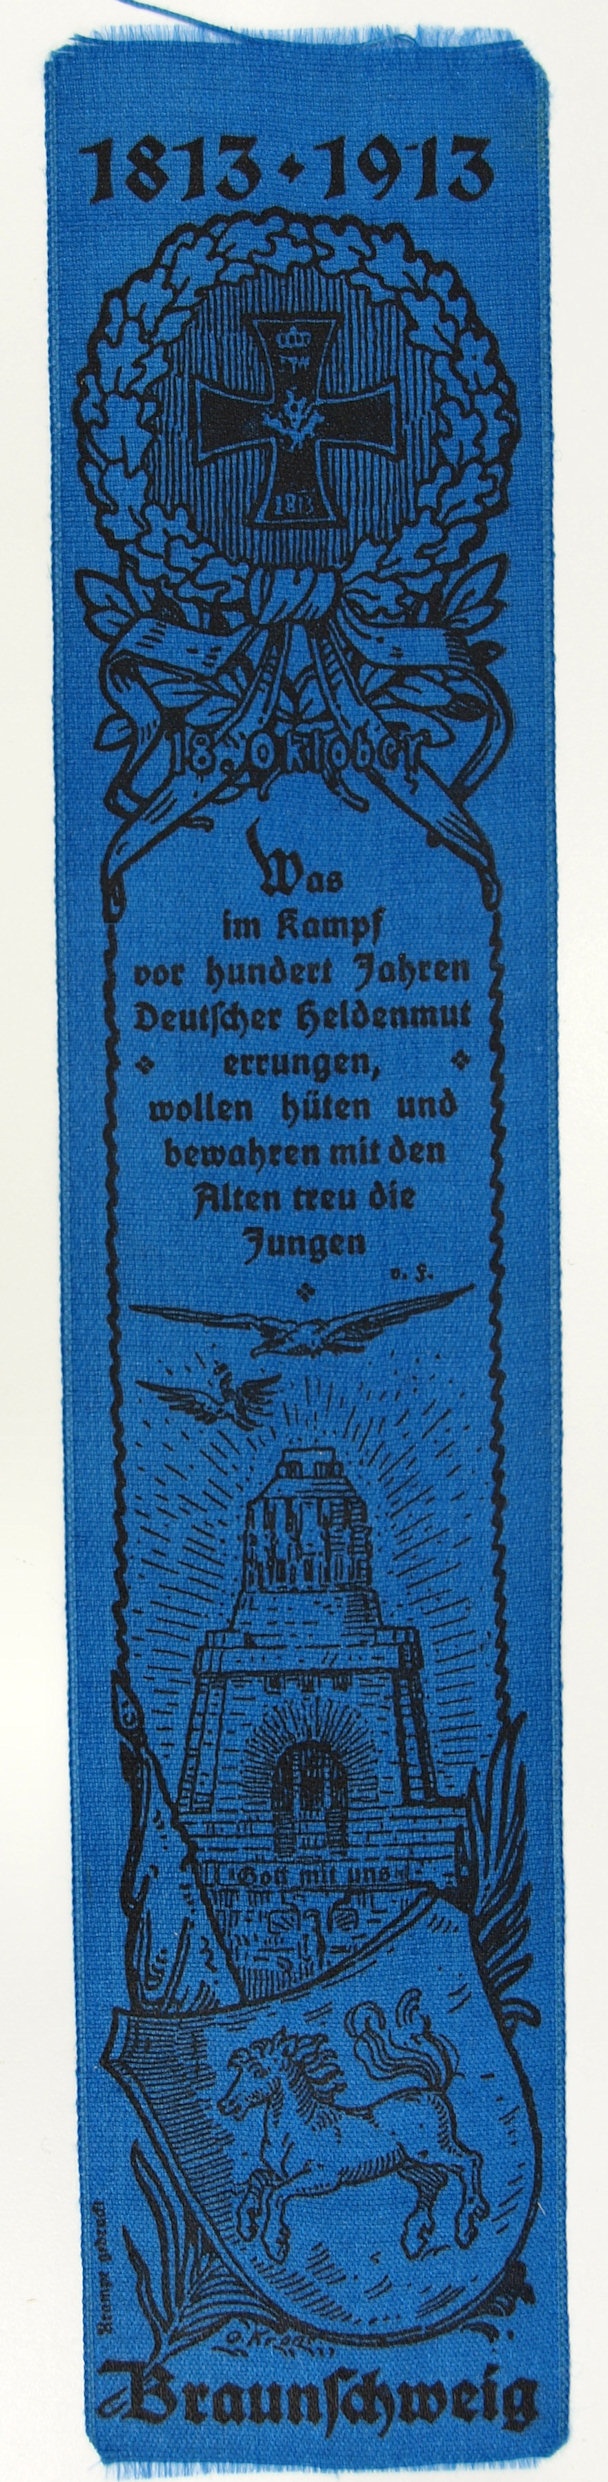 Vivatband anlässlich der Enthüllung des Völkerschlachtdenkmals, 18.10.1913 (Museum Weißenfels - Schloss Neu-Augustusburg CC BY-NC-SA)